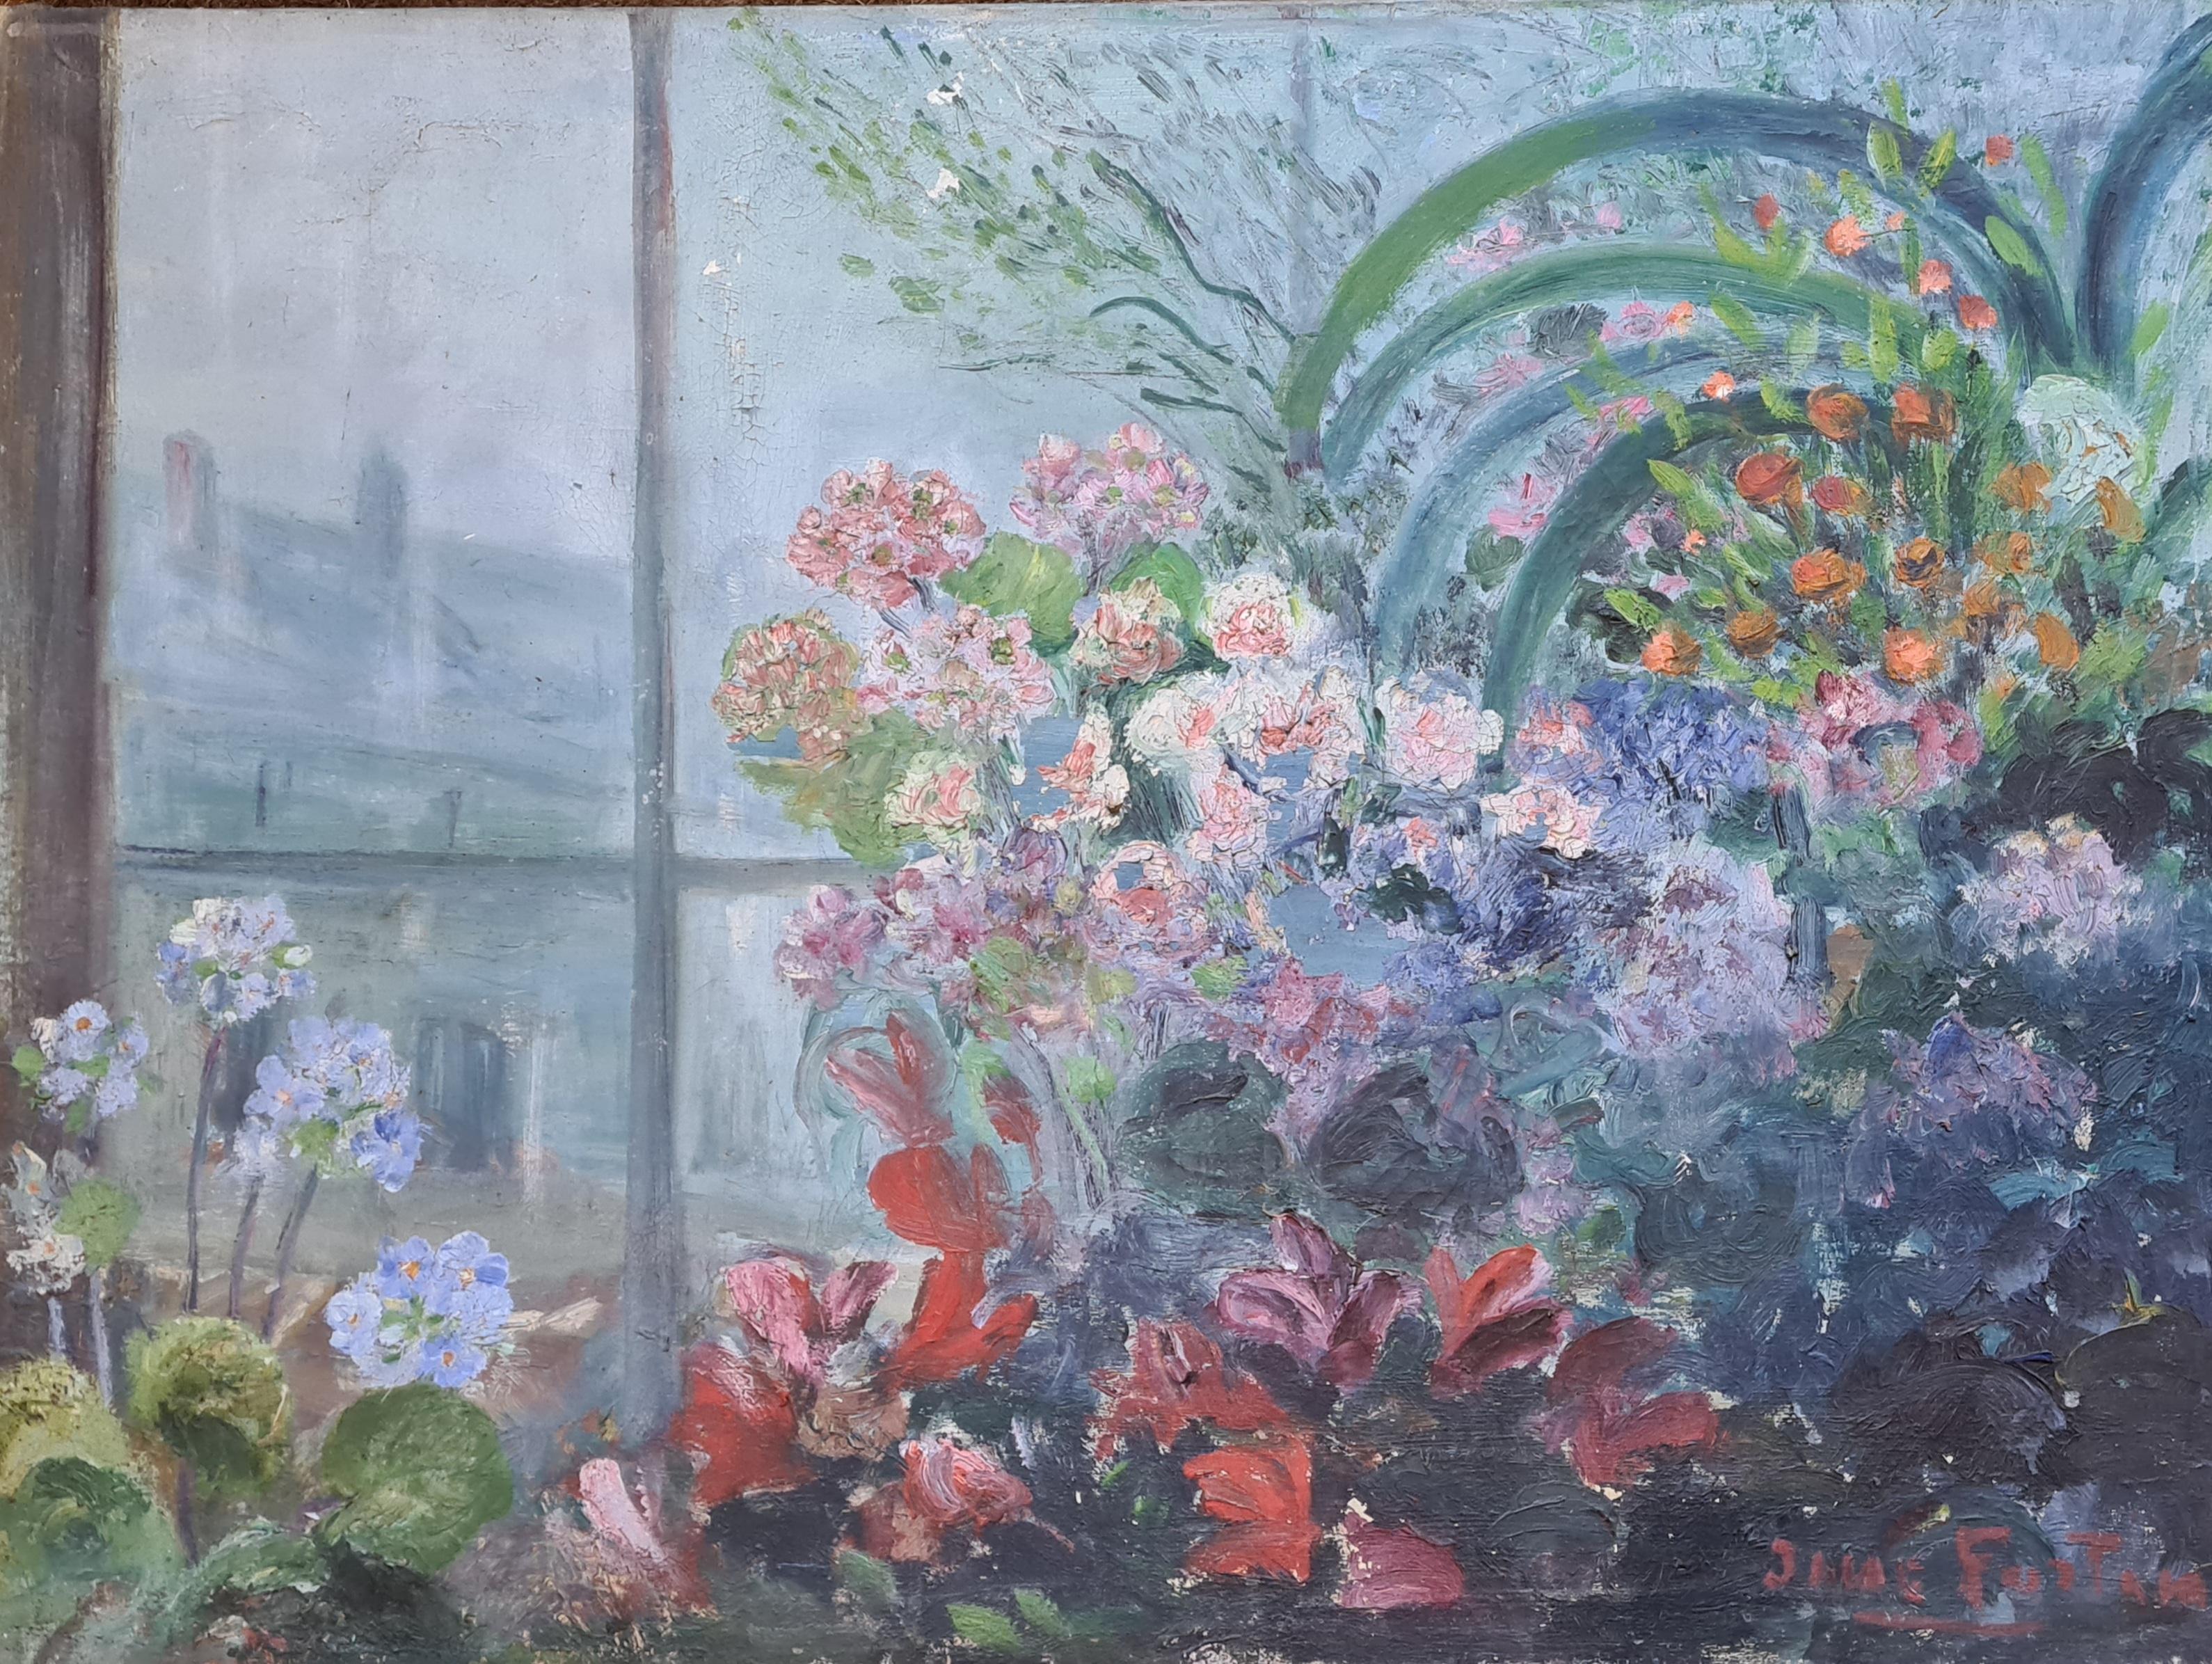 Vue d'un intérieur impressionniste français, abondance florale, vue d'une fenêtre